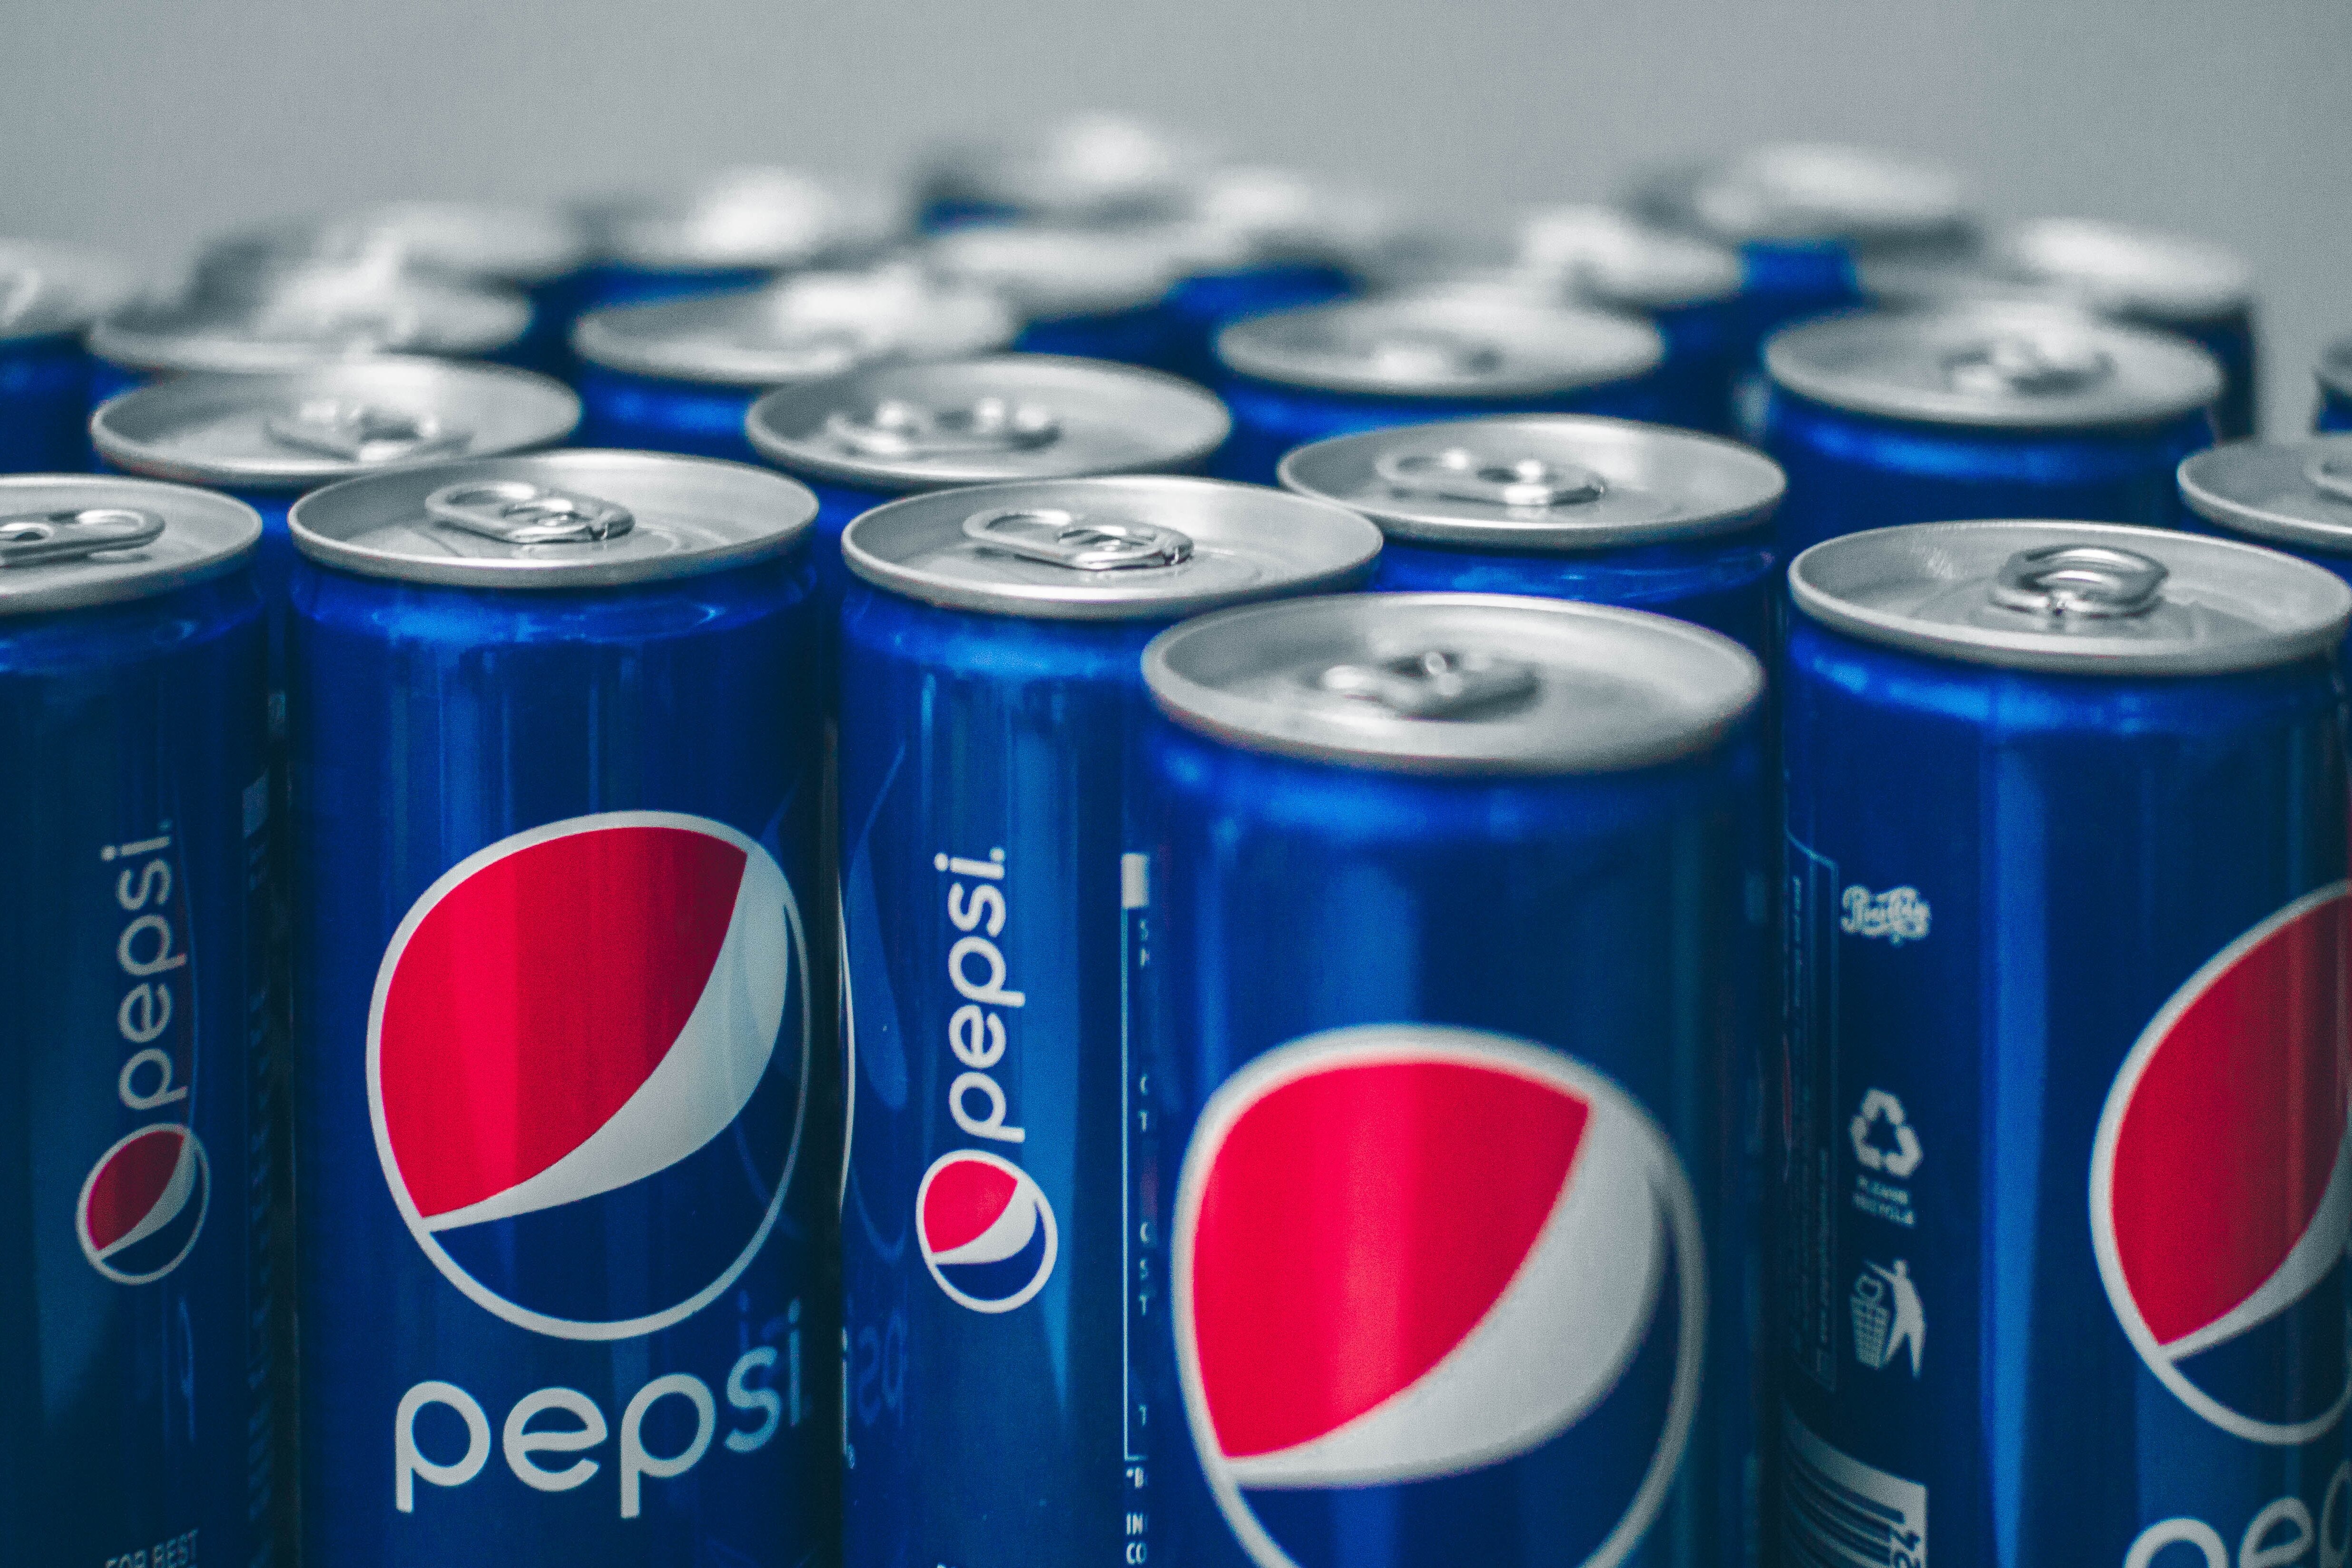 Что означает Pepsi? Пользователи были удивлены, узнав историю напитка